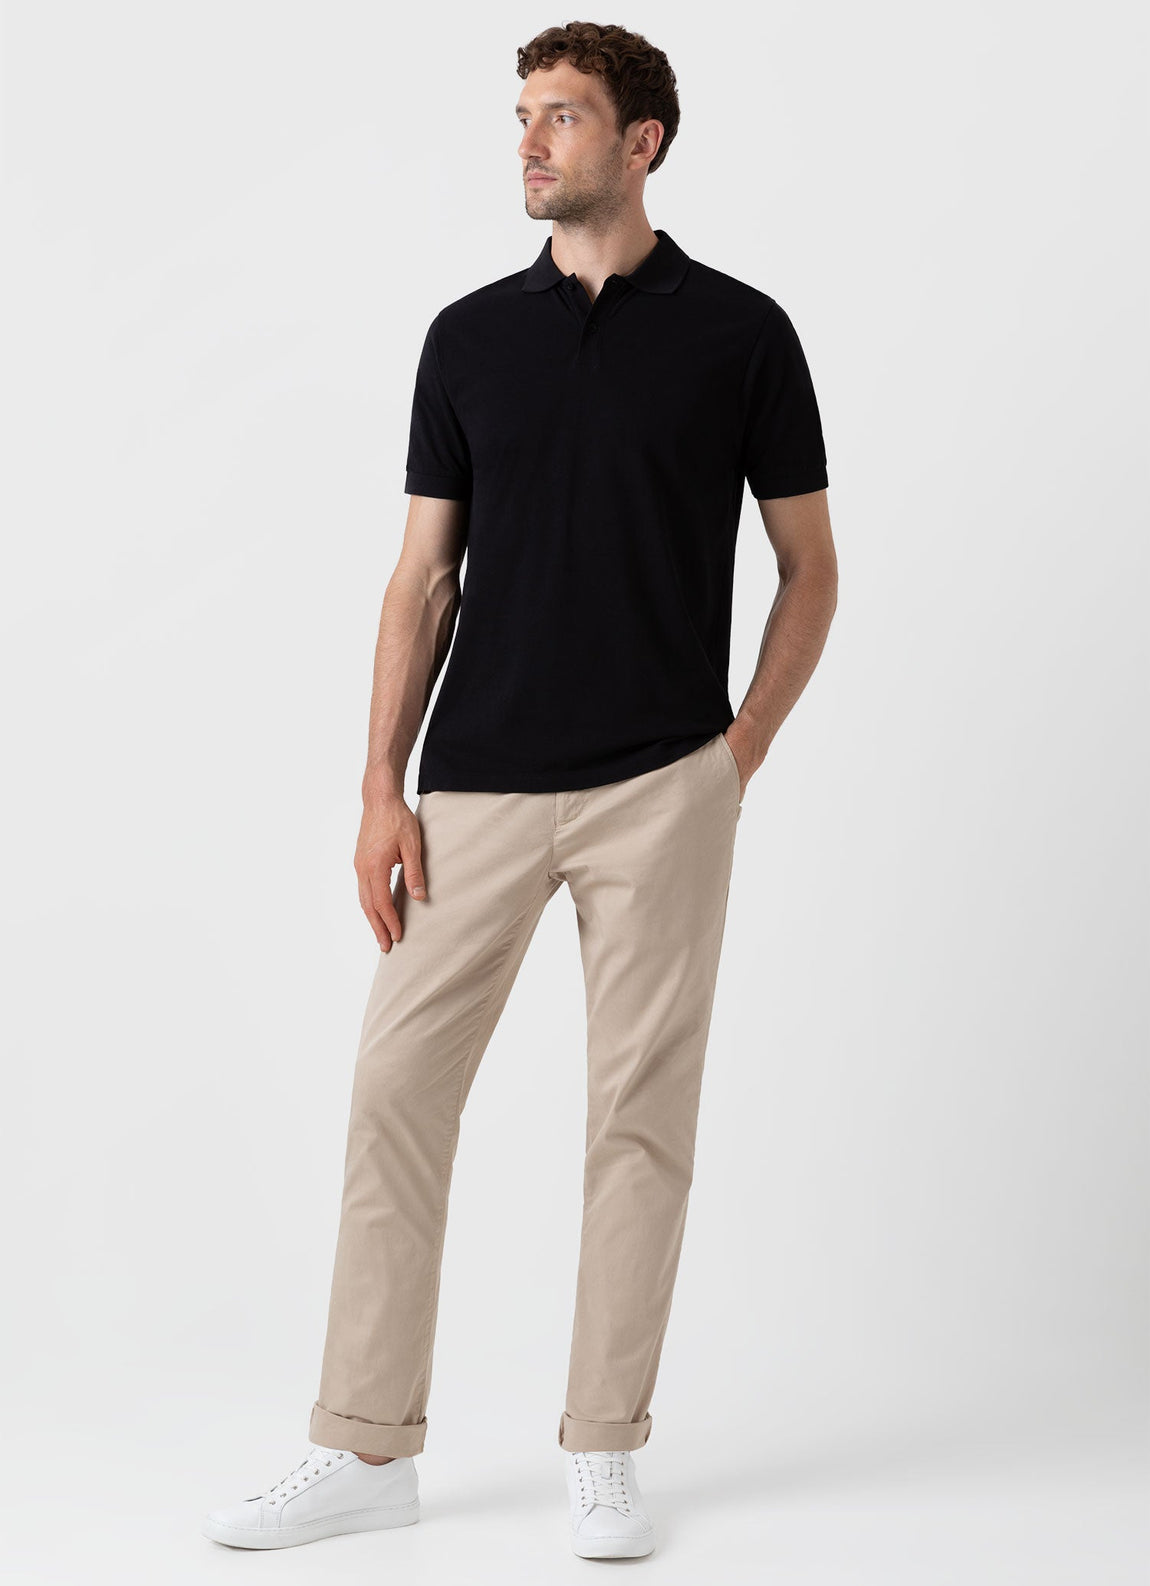 Men's Piqué Polo Shirt in Black | Sunspel